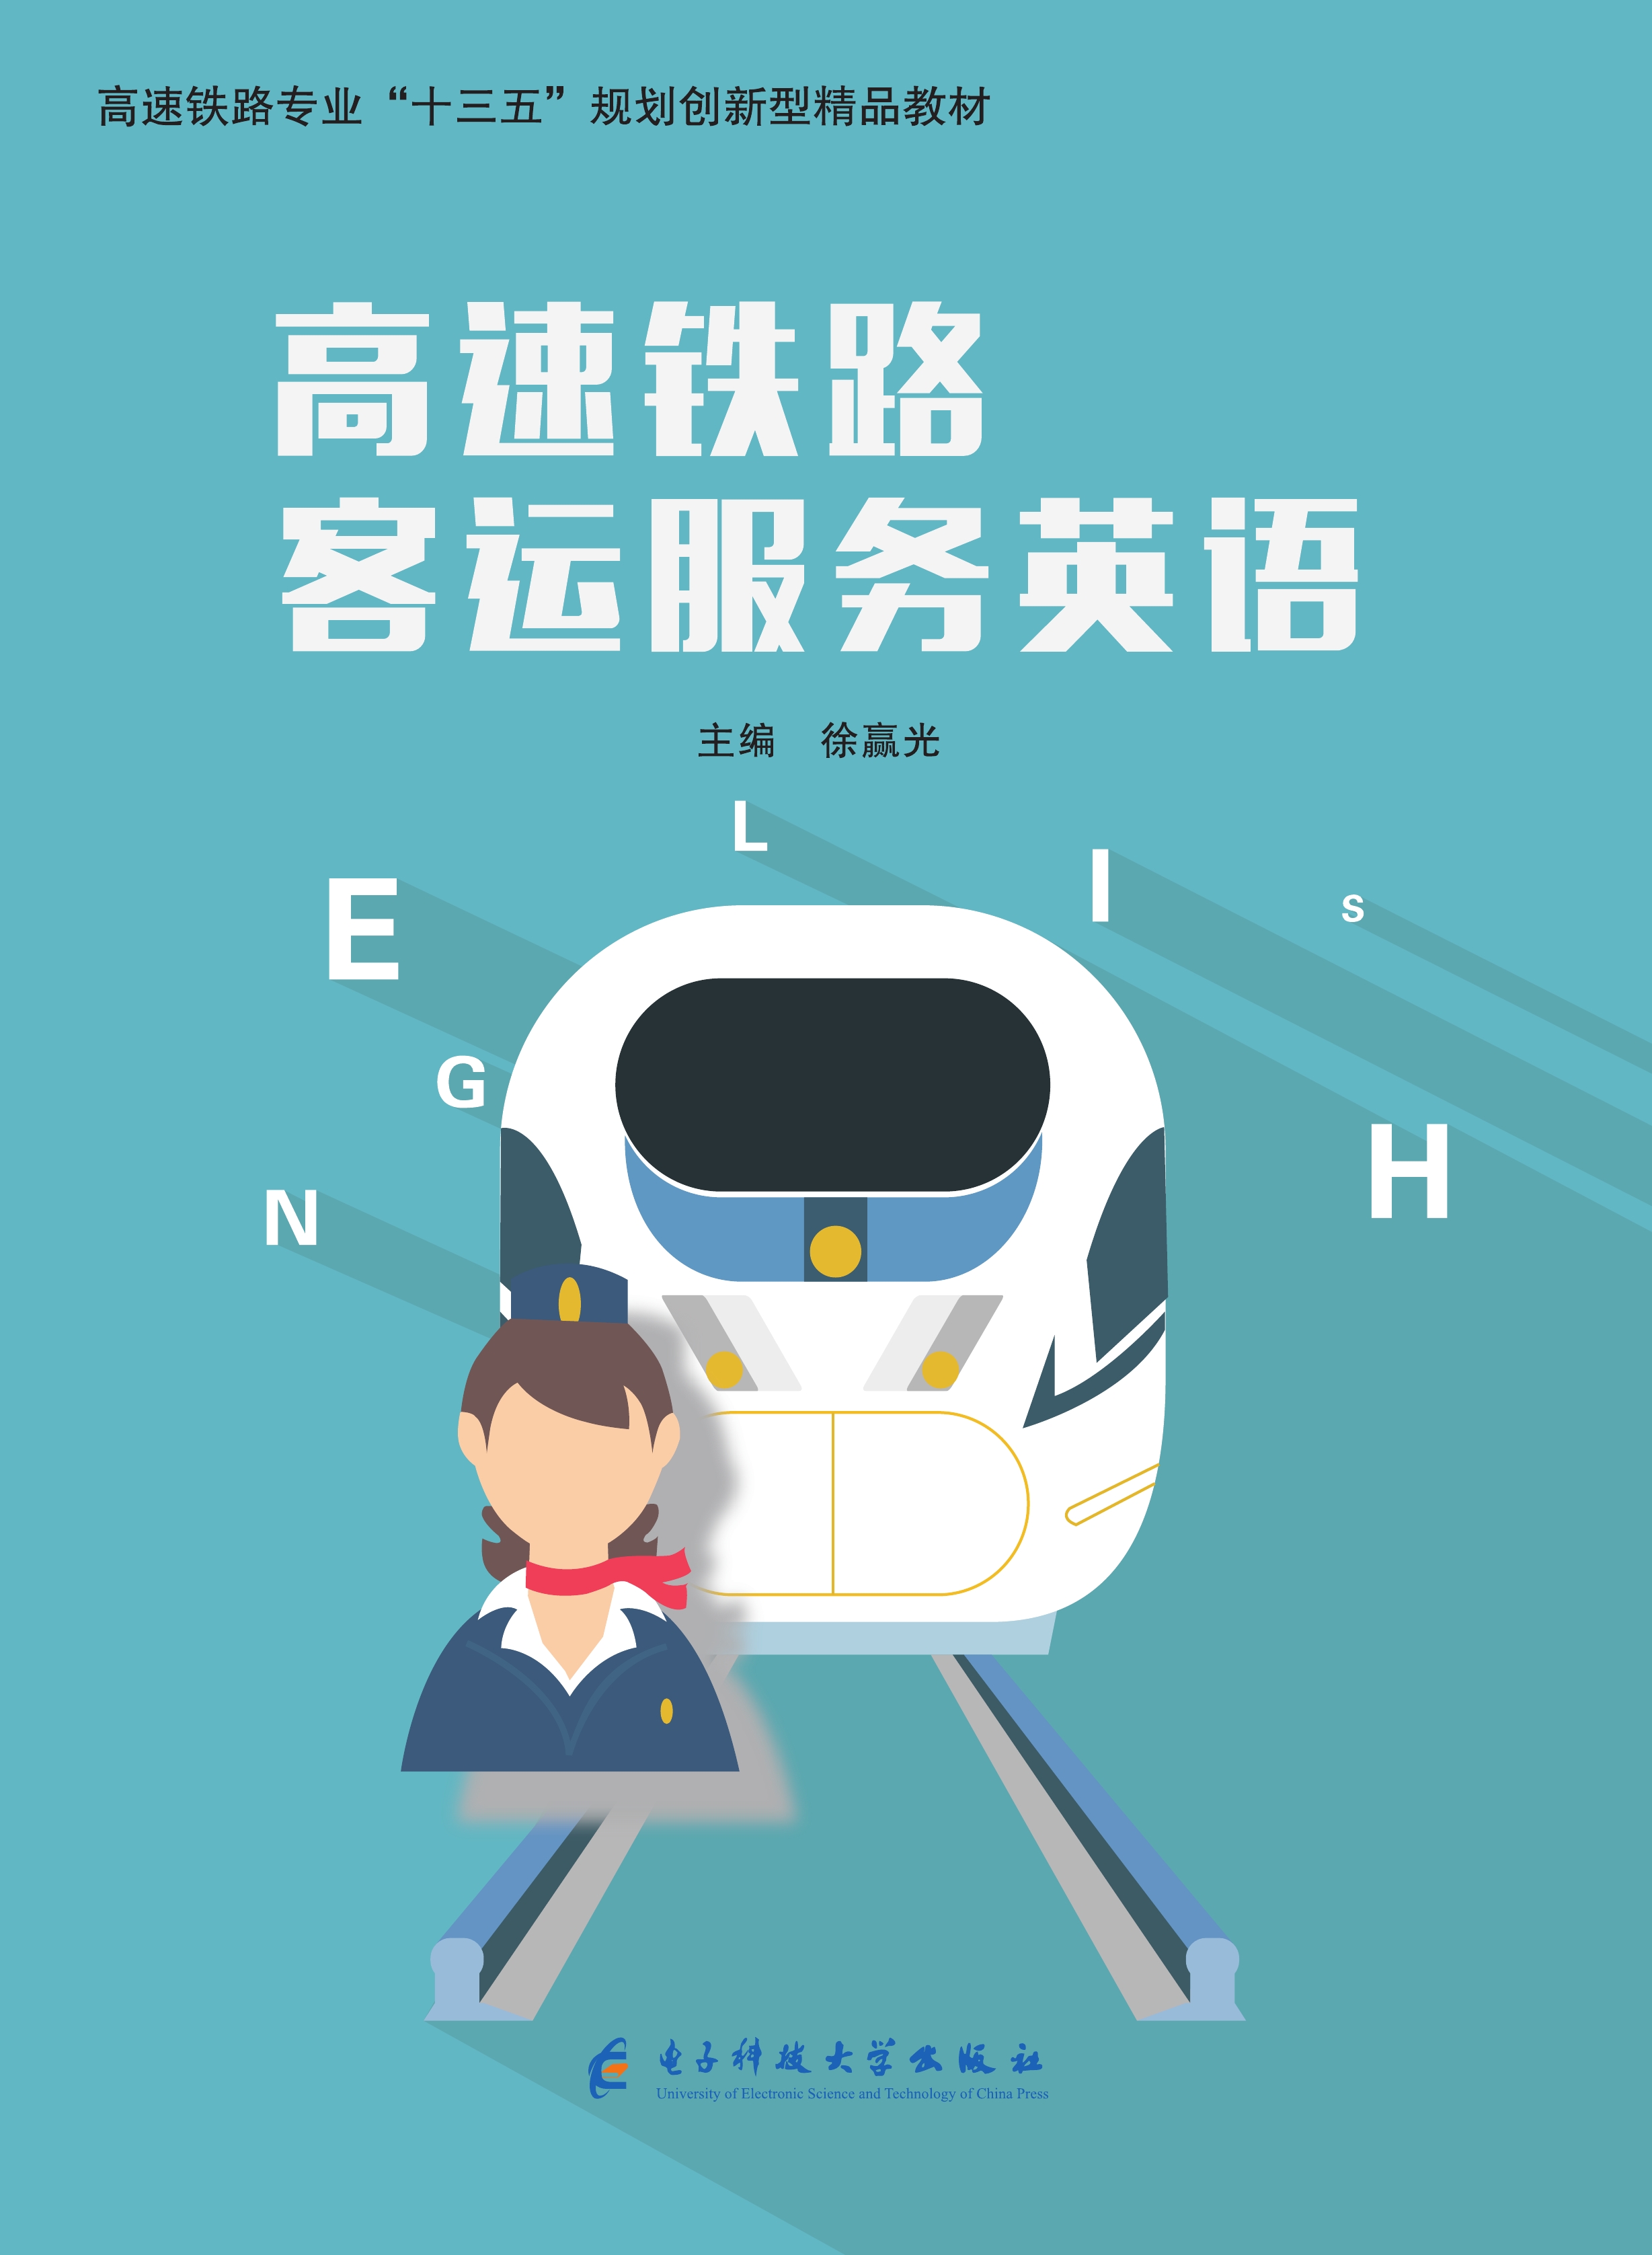 高速铁路客运服务英语